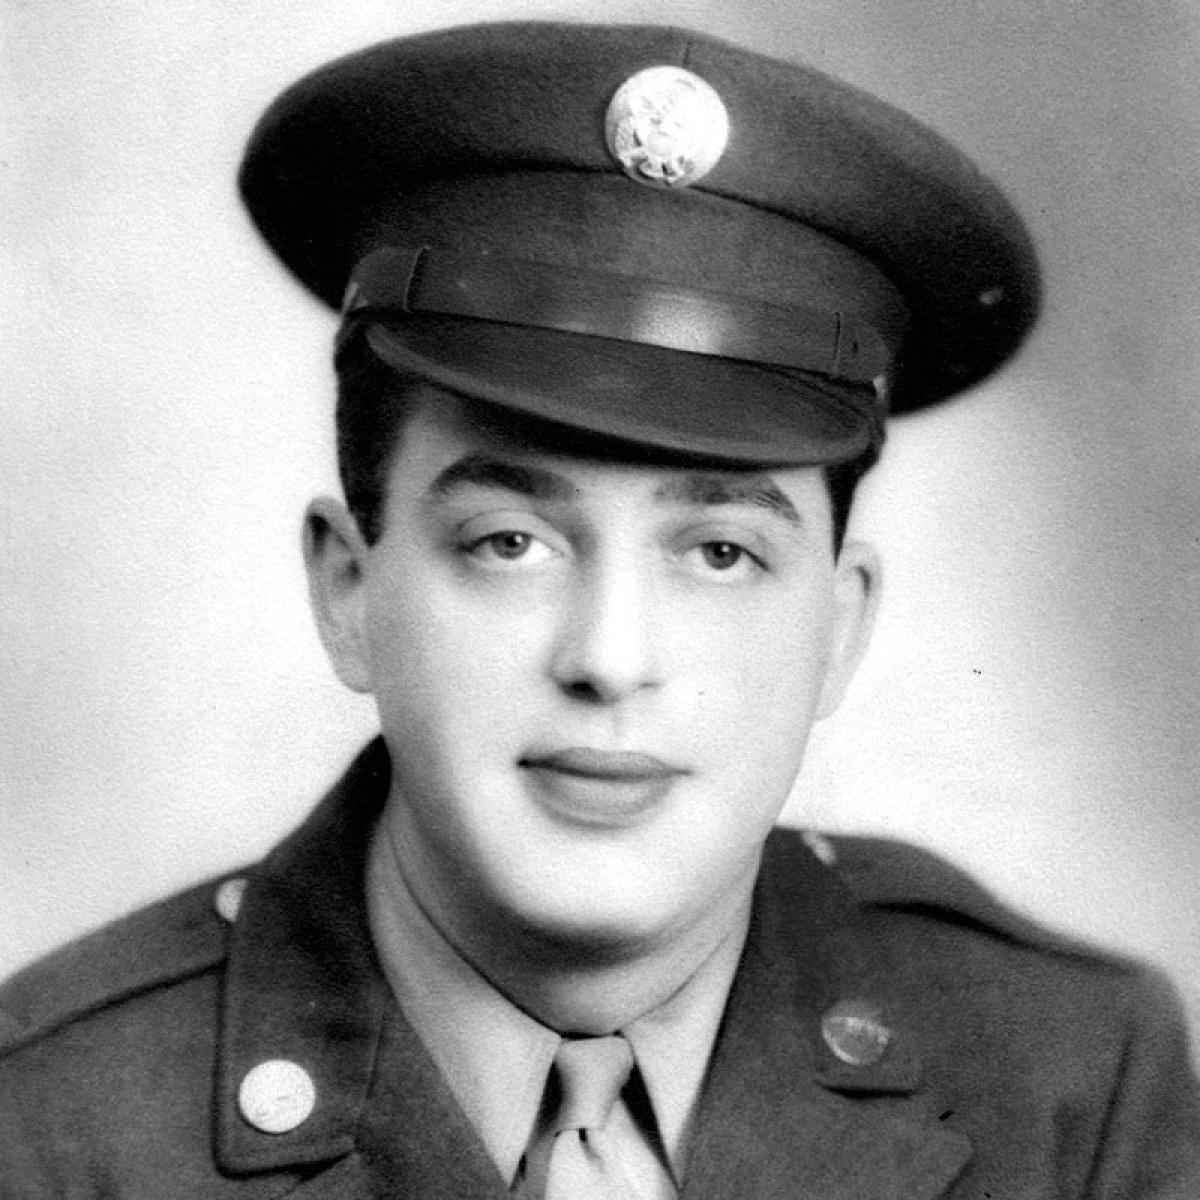 Howard Grinde US Army 1943-1946